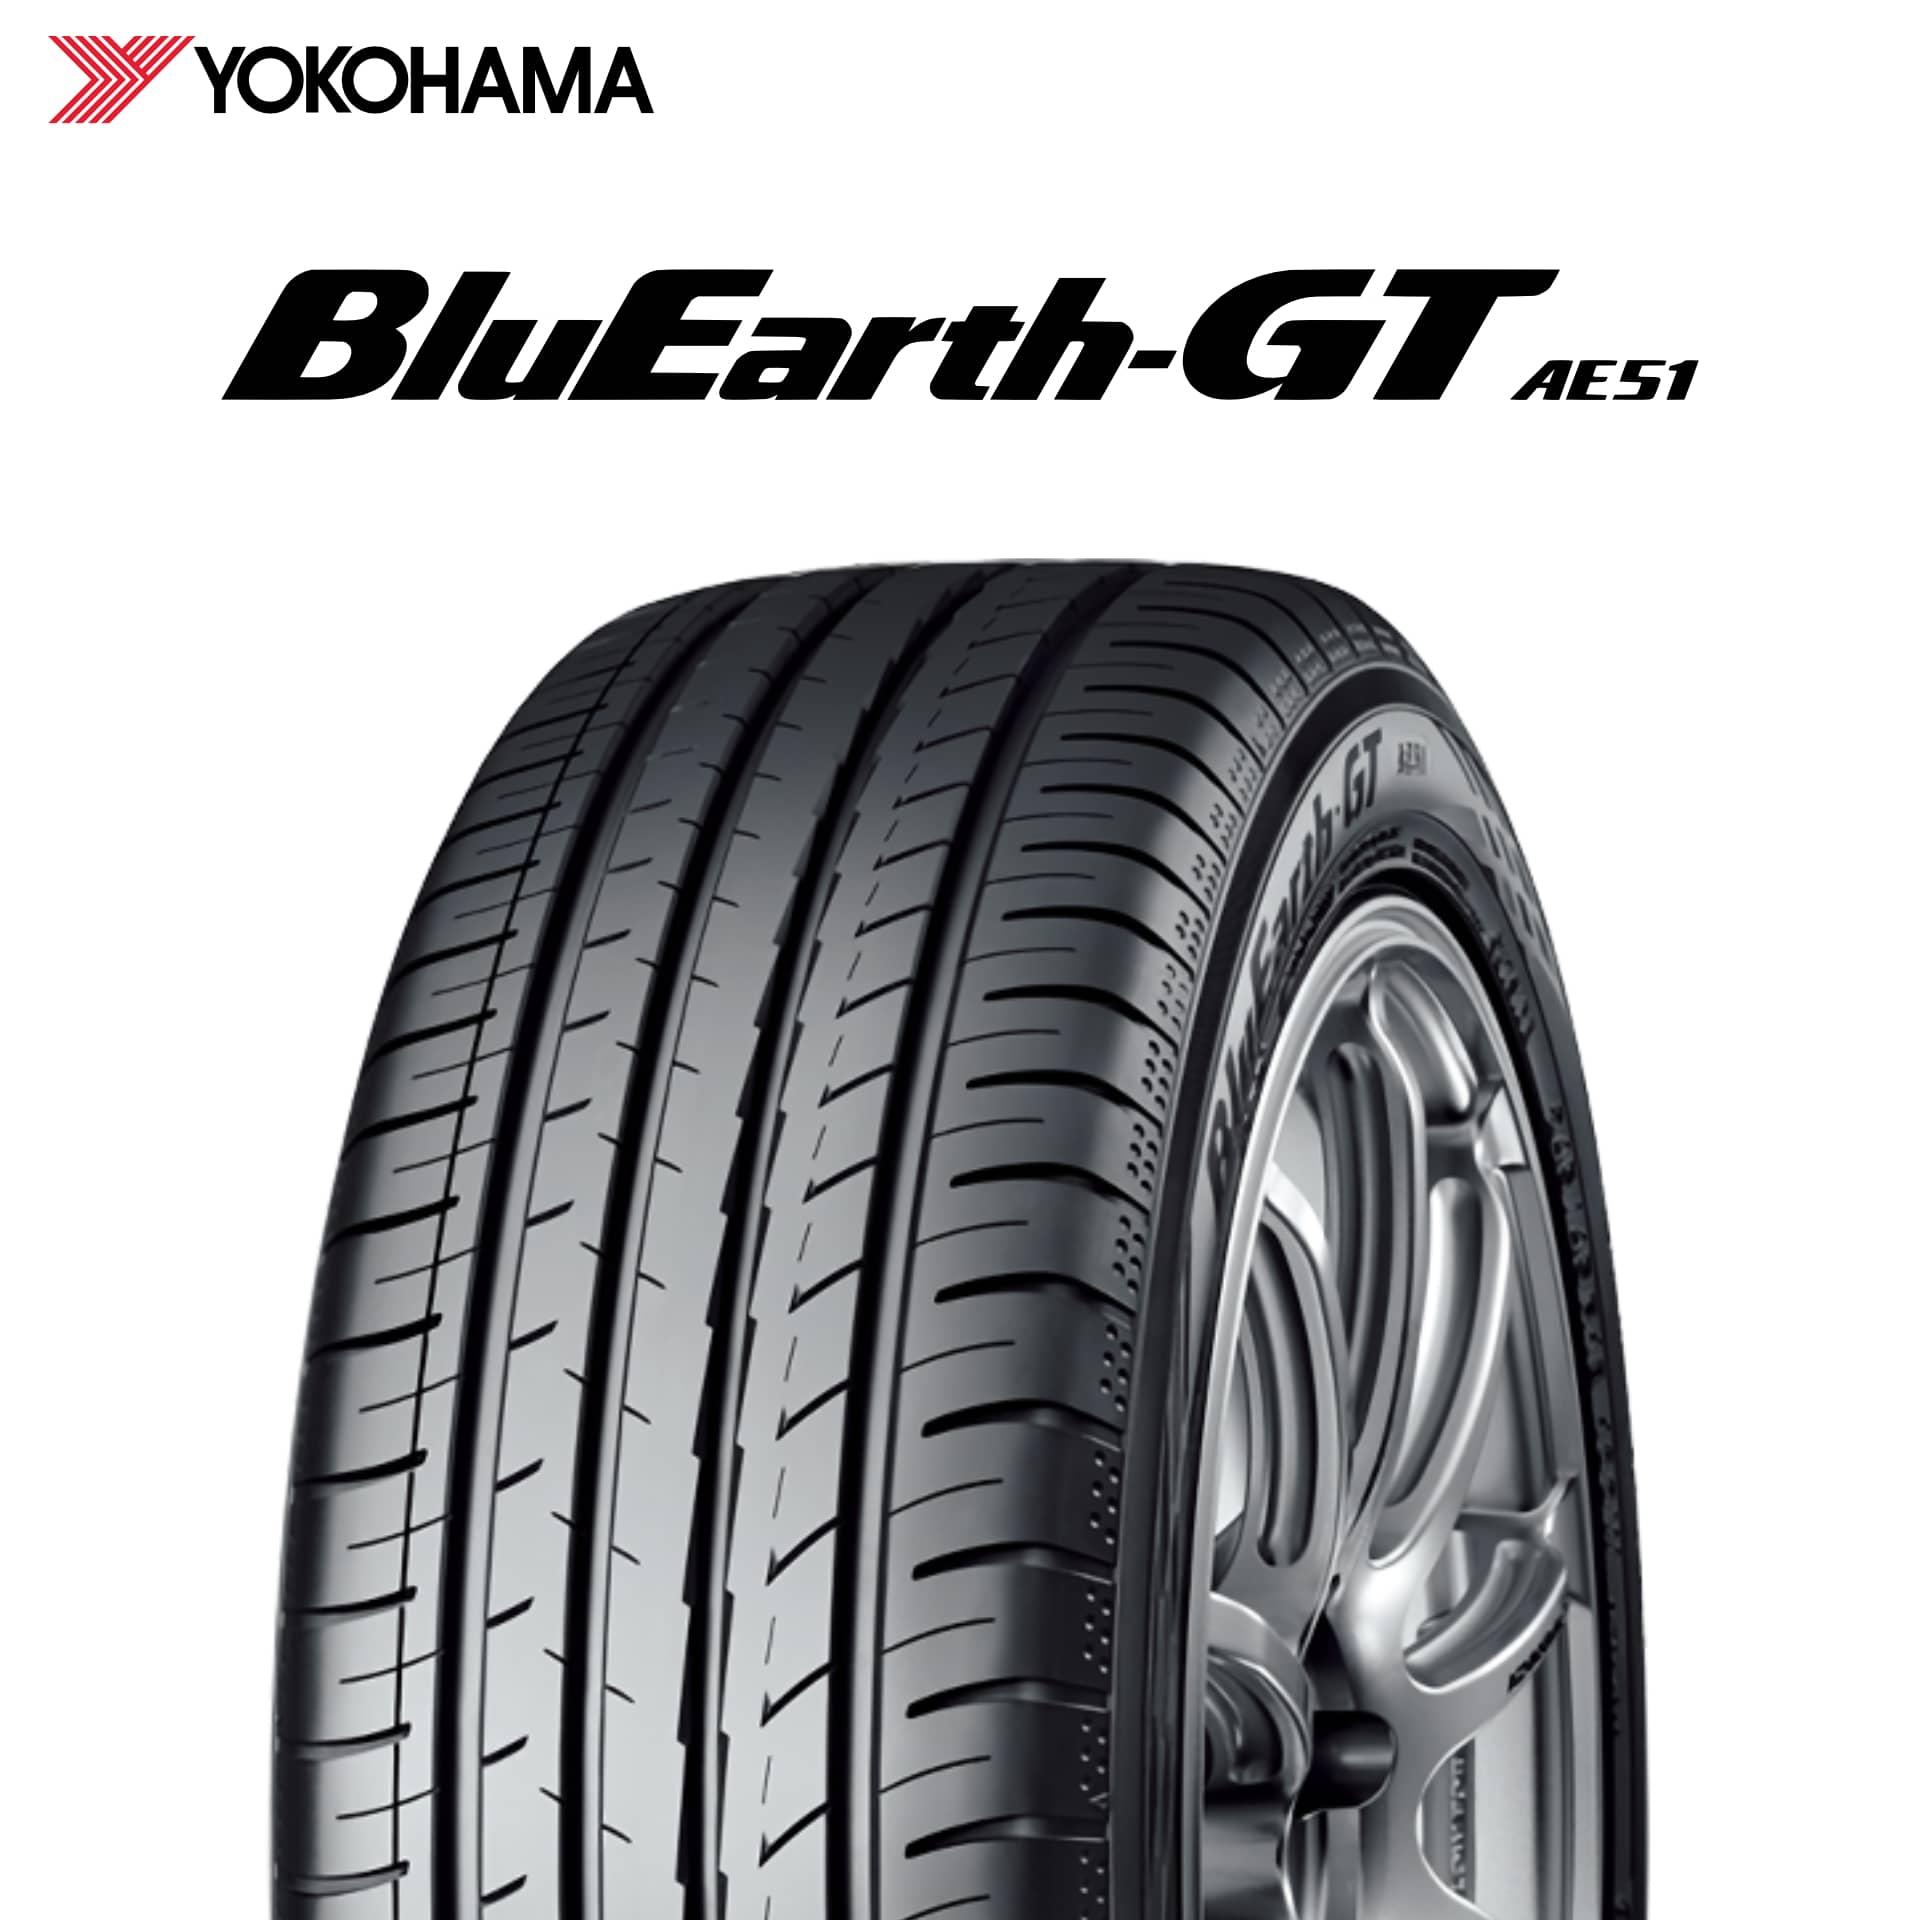 23年製 日本製 235/50R18 101W XL ヨコハマタイヤ BluEarth-GT AE51 (ブルーアースGT AE51) 18インチ 235/50/18 235/50-18 235-50-18 2355018 新品